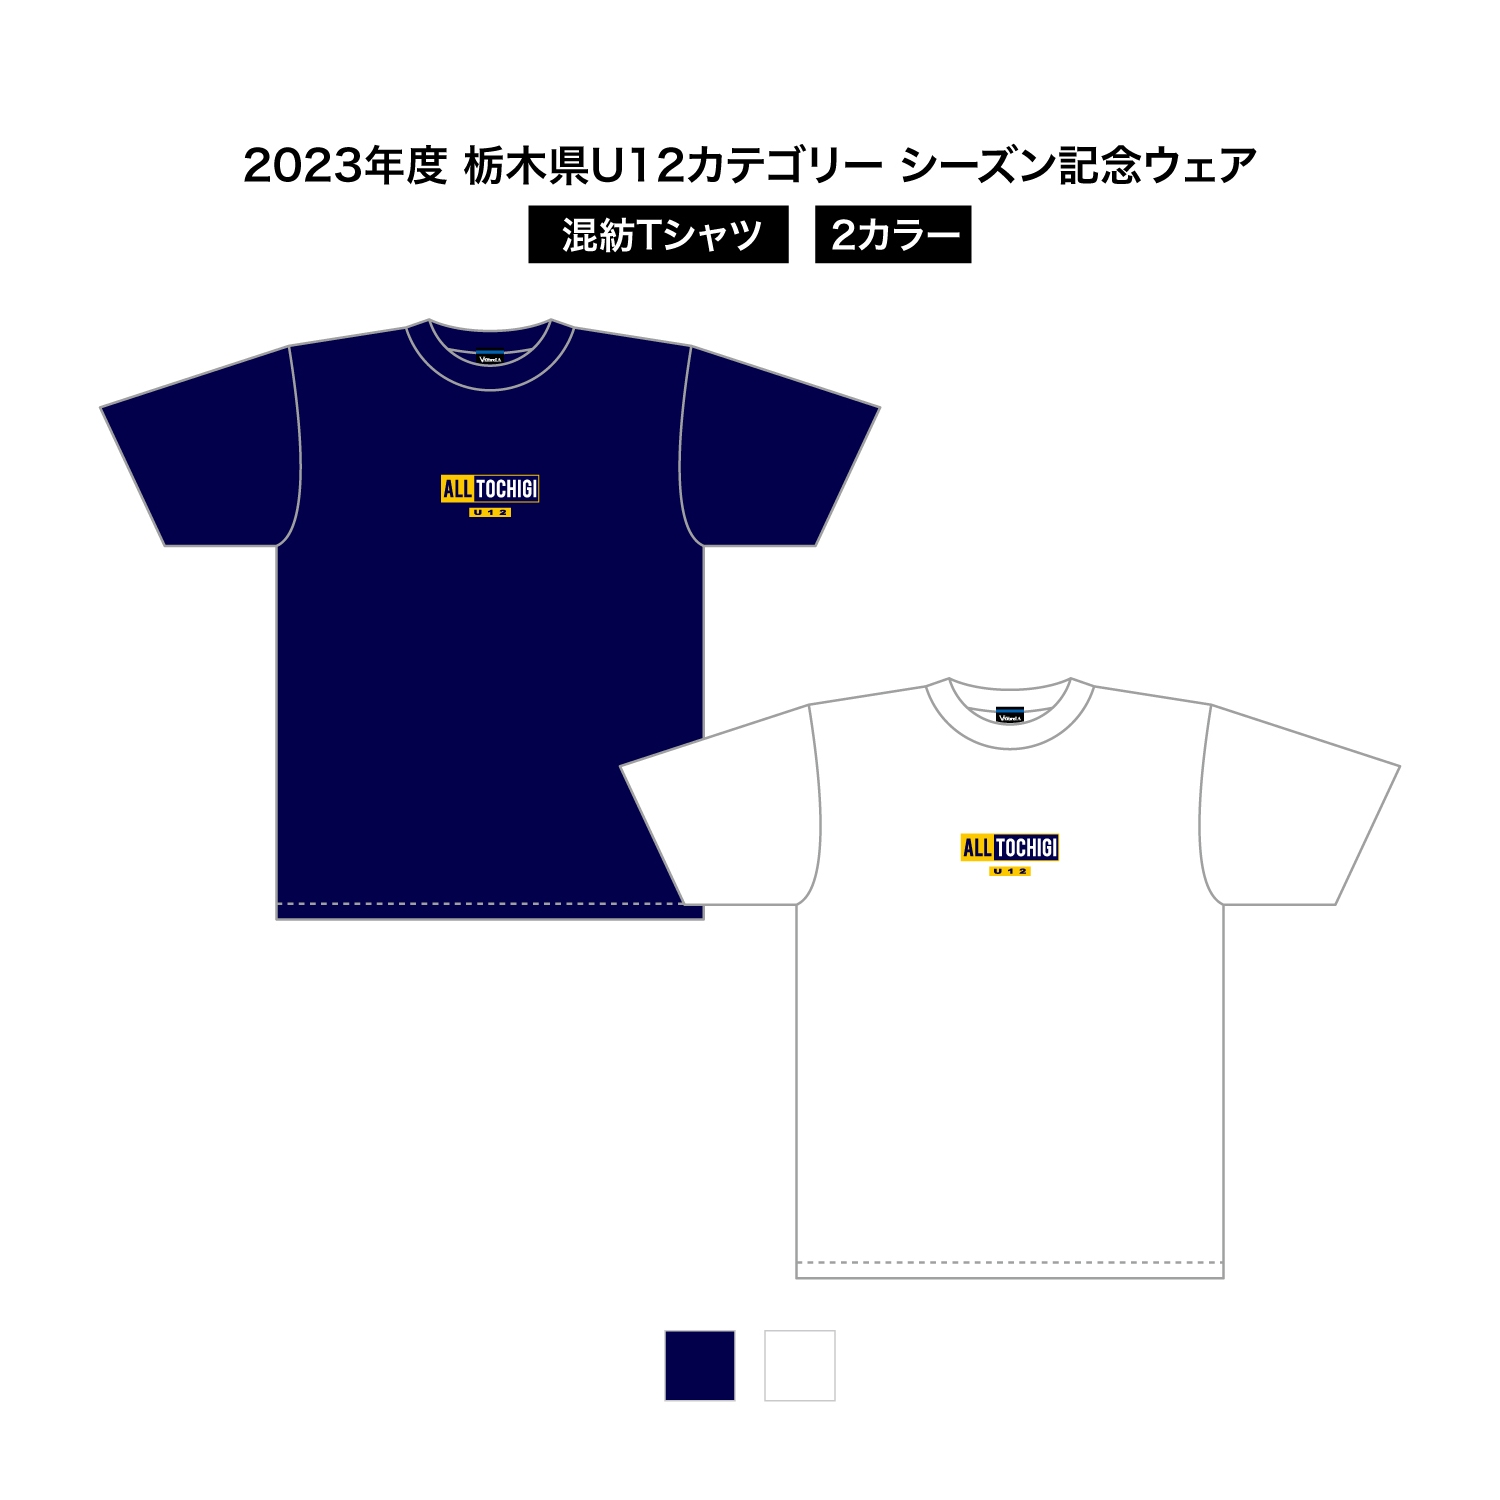 2023 栃木県U12 シーズン記念ウェア 混紡Tシャツ